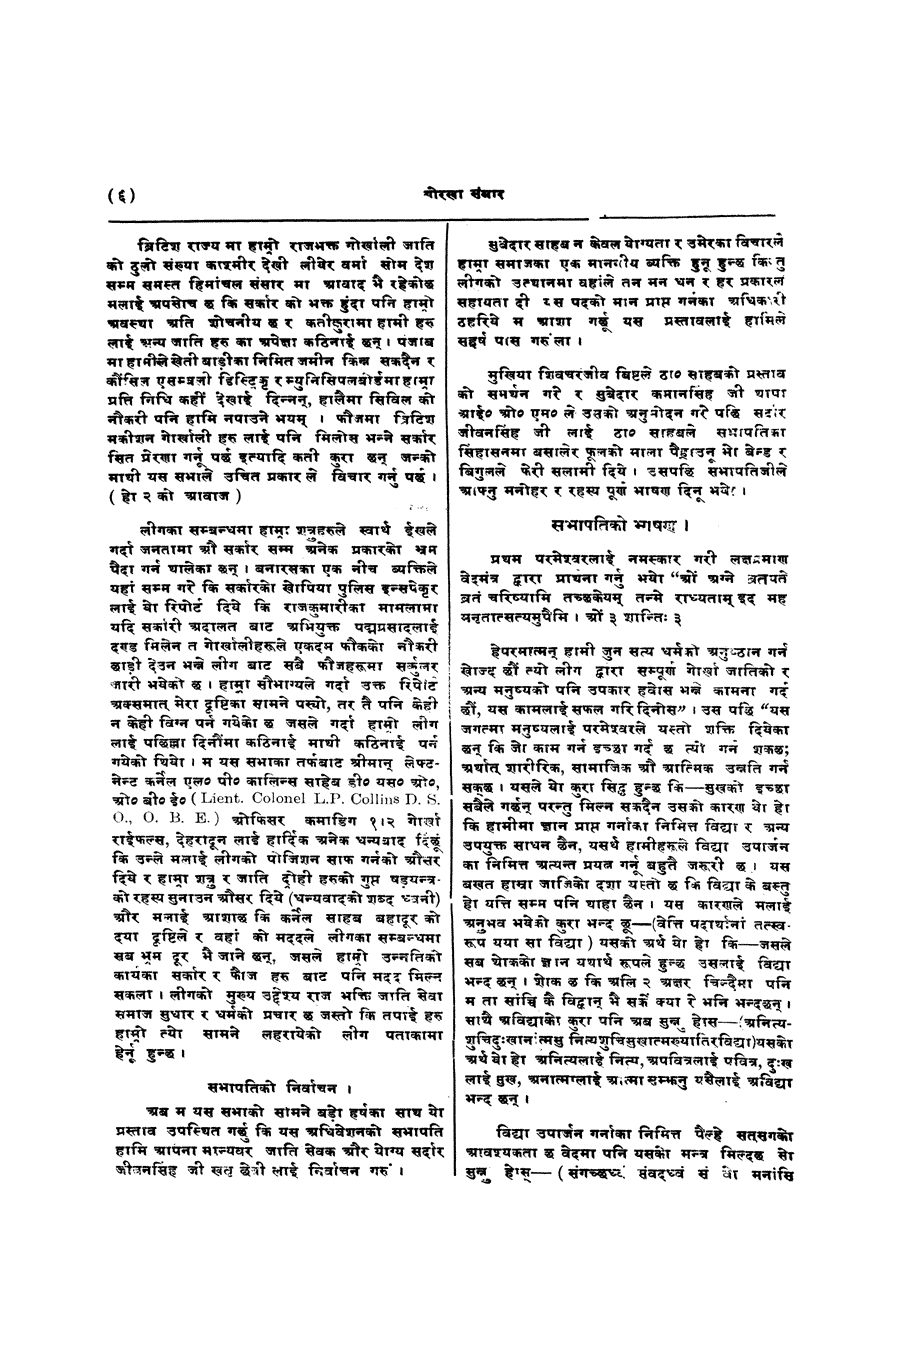 Gorkha Sansar, 10 Jan 1928, page 6